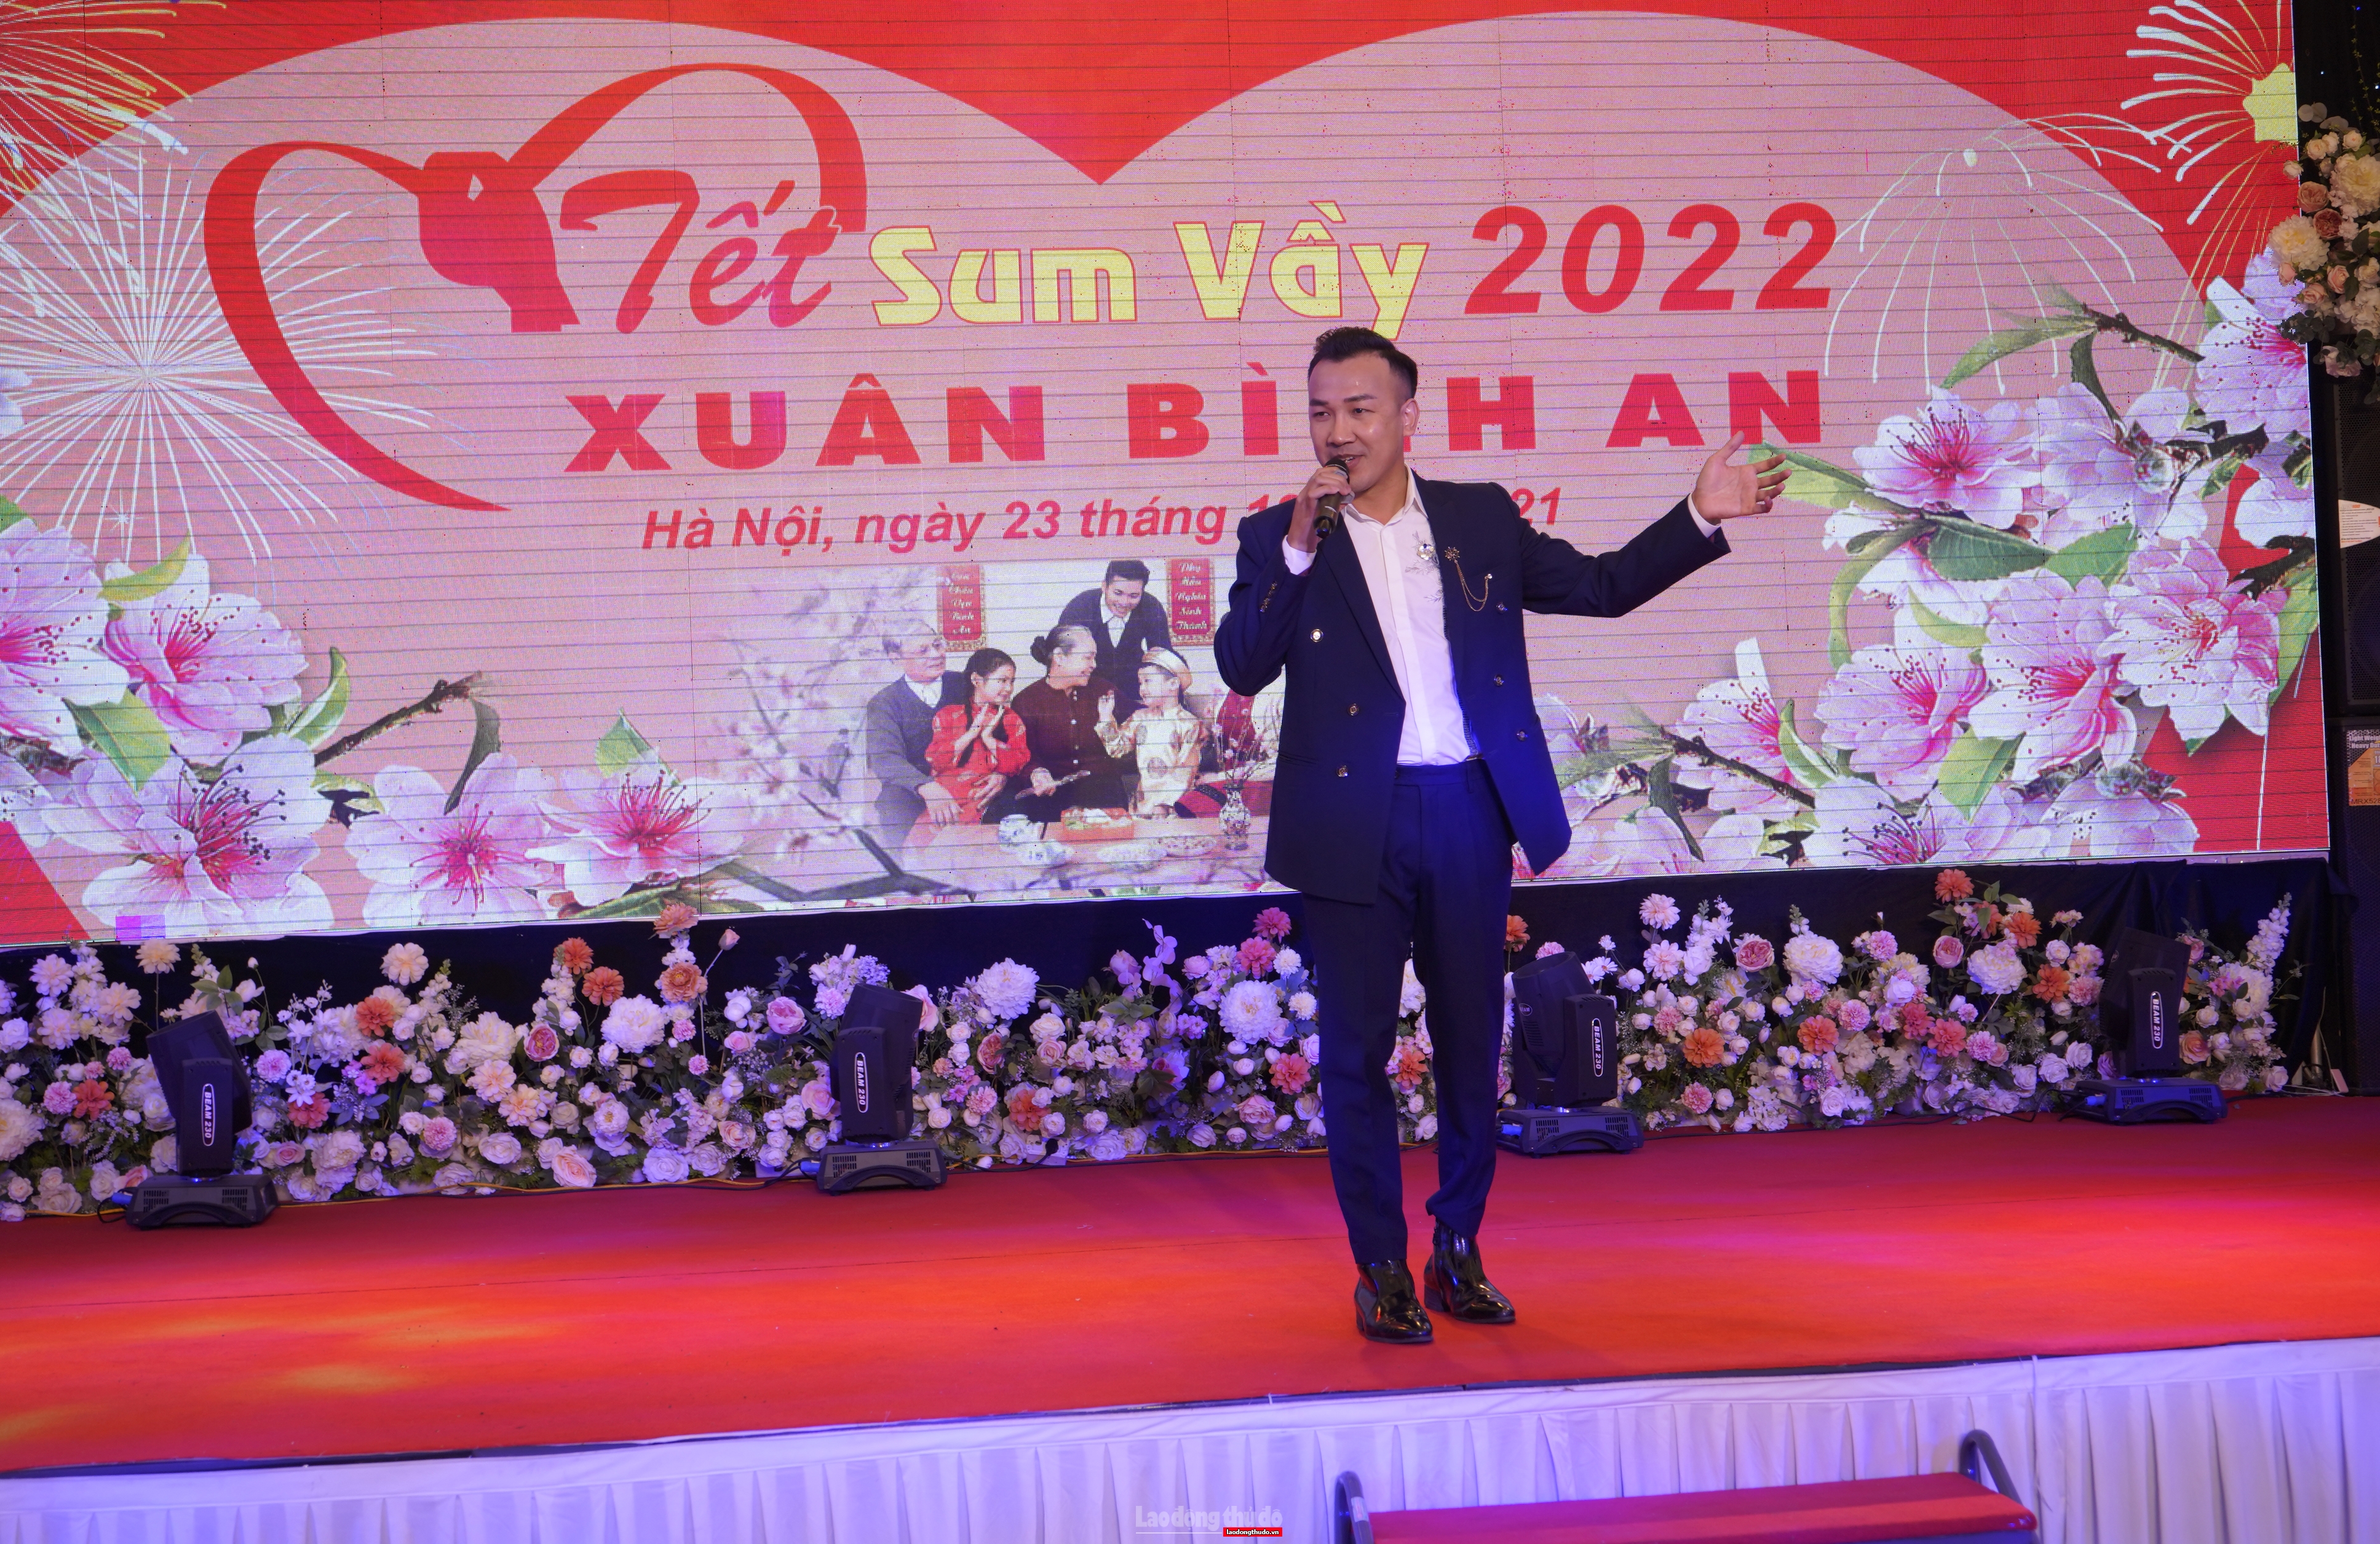 Công đoàn Cơ quan LĐLĐ thành phố Hà Nội tổ chức chương trình “Tết sum vầy - Xuân bình an